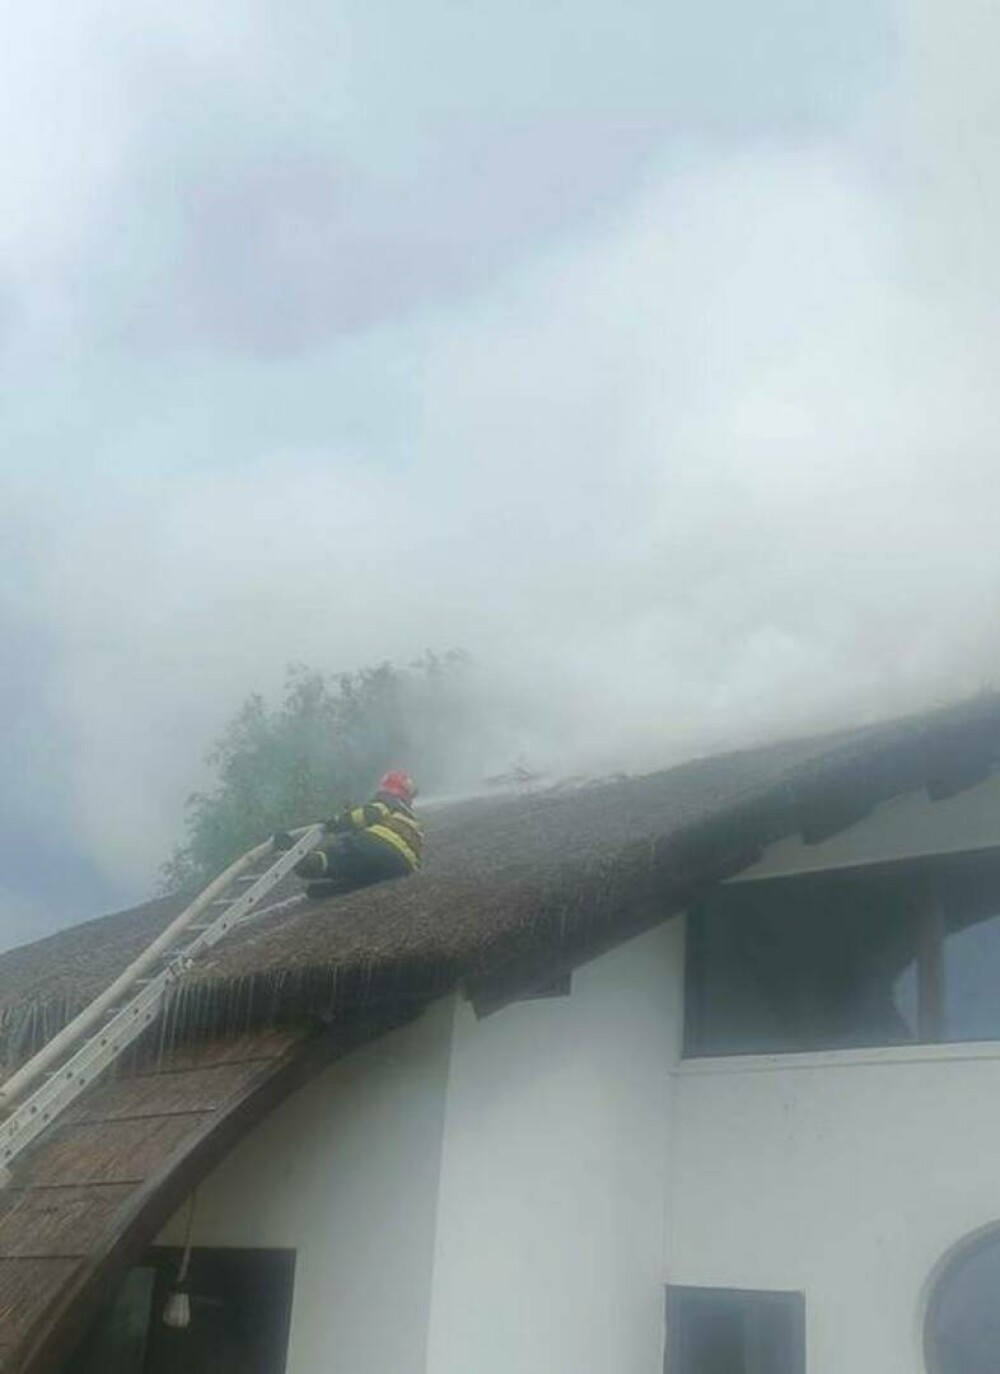 Incendiu la un bungalow al unei unităţi turistice din Tulcea. Pompierii intervin pentru stingerea flăcărilor. FOTO & VIDEO - Imaginea 2